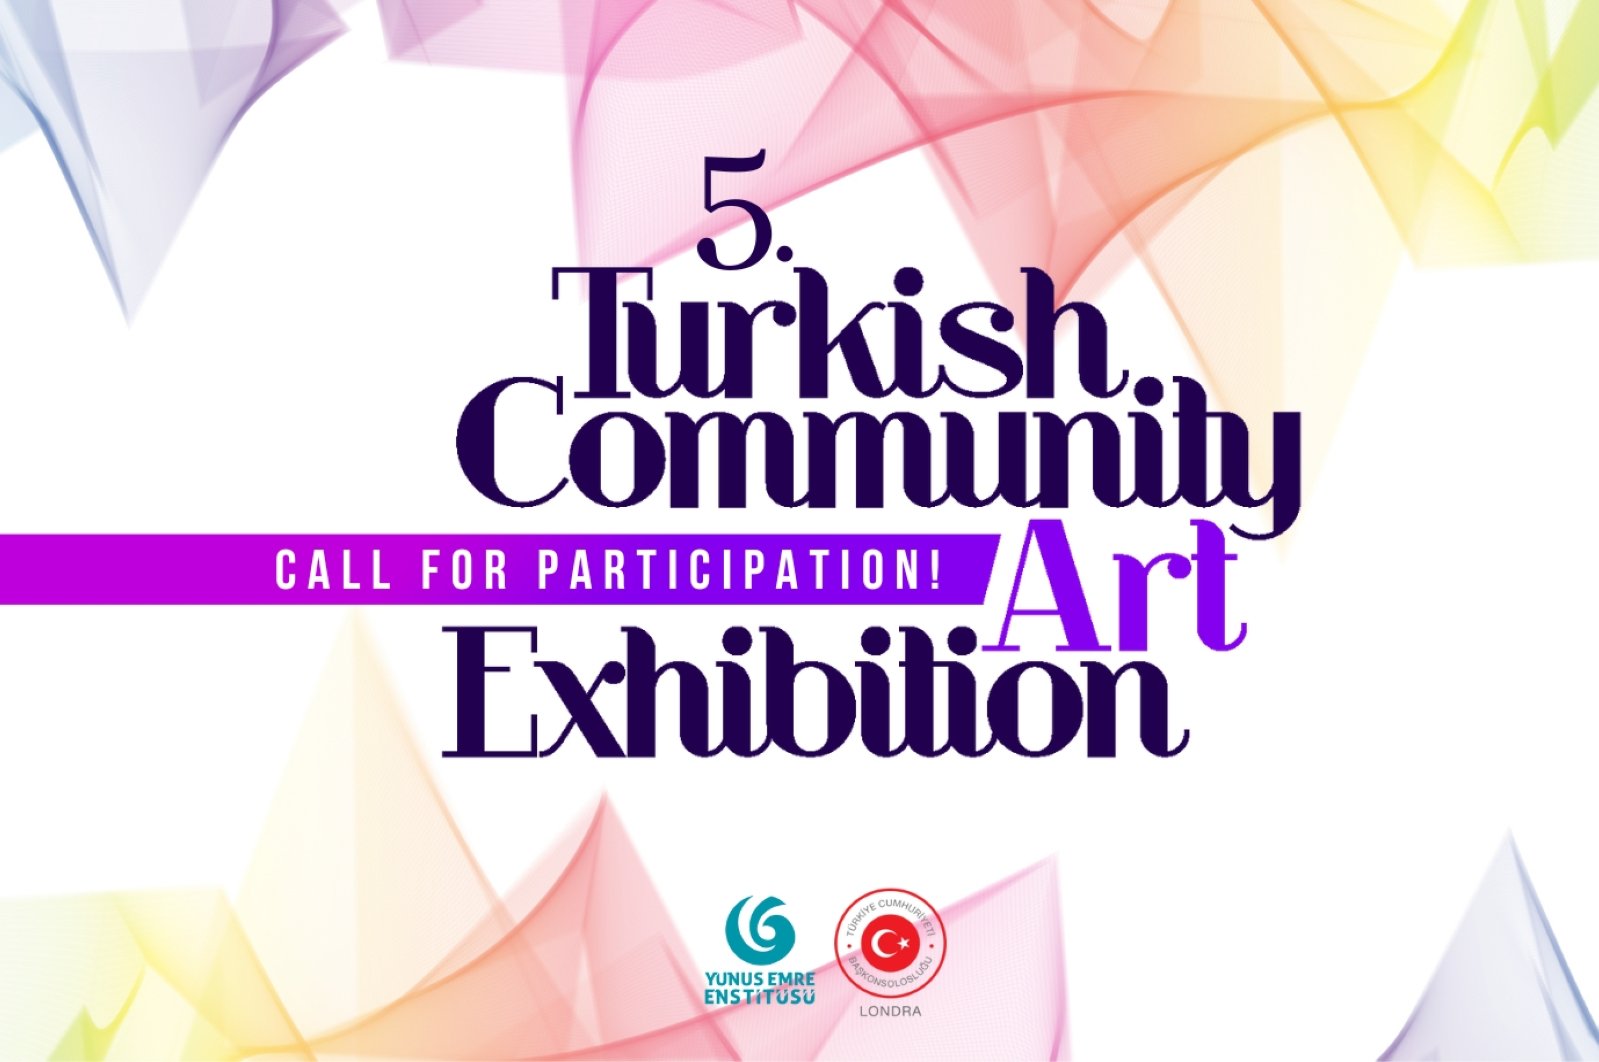 ‘Pameran Seni Komunitas Turki ke-5’ meminta pengiriman di Inggris